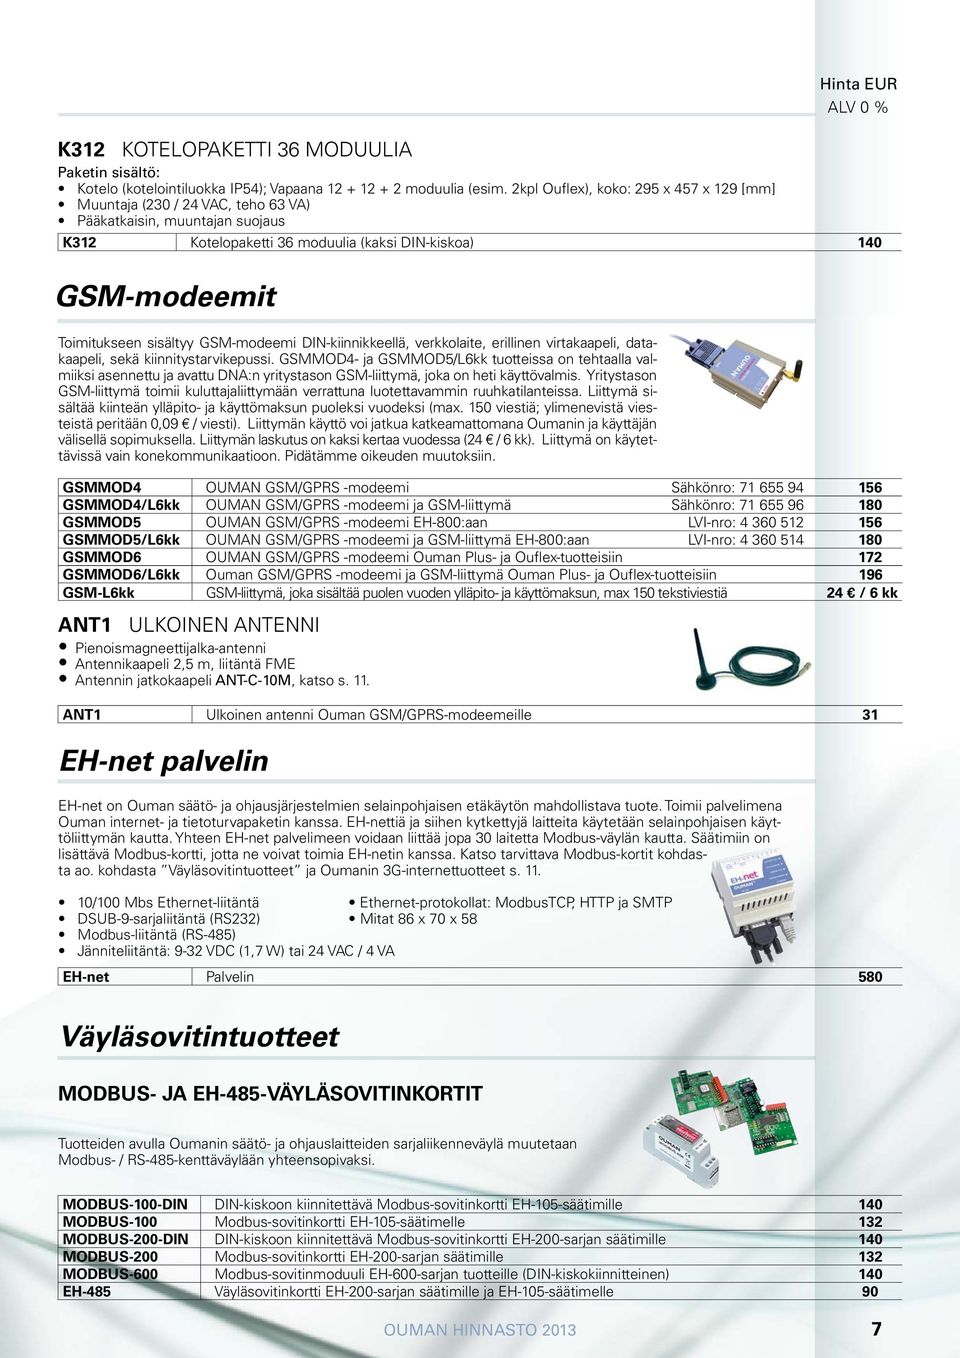 GSM-modeemi DIN-kiinnikkeellä, verkkolaite, erillinen virtakaapeli, datakaapeli, sekä kiinnitystarvikepussi.